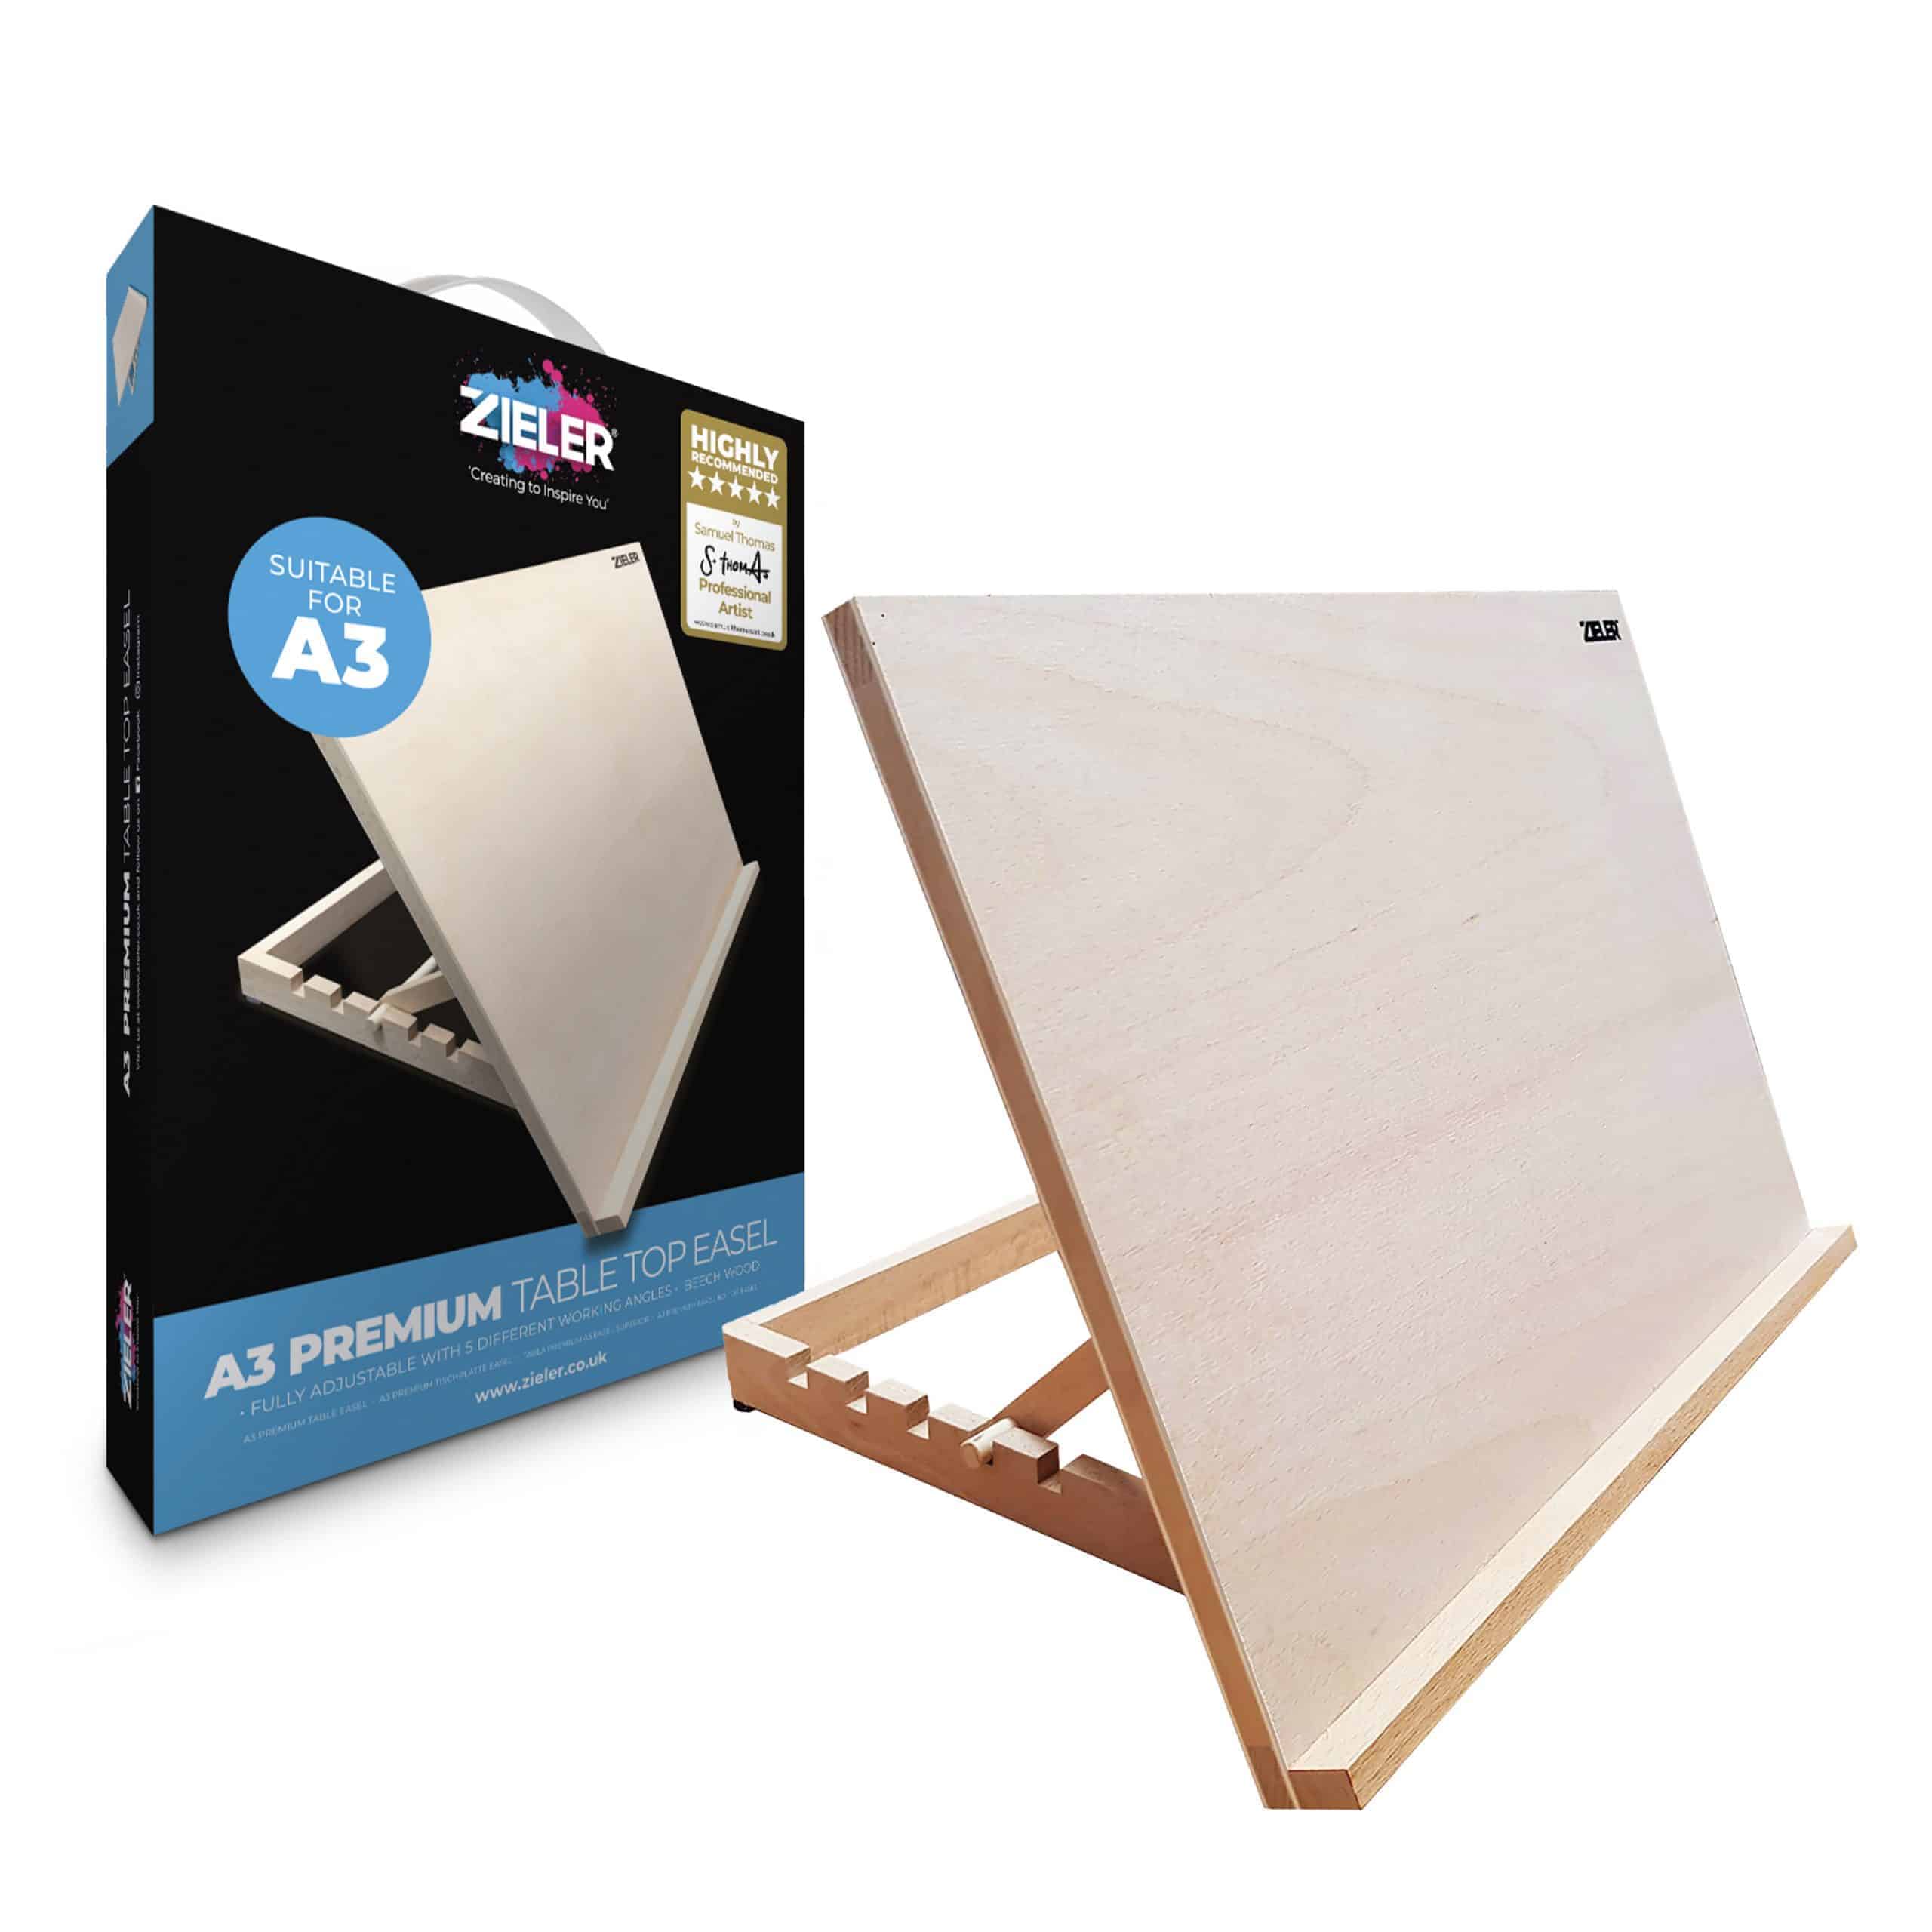 A3 Art & Craft Workstation Wooden Desktop Drawing Board Artist Adjustable Table Easel 